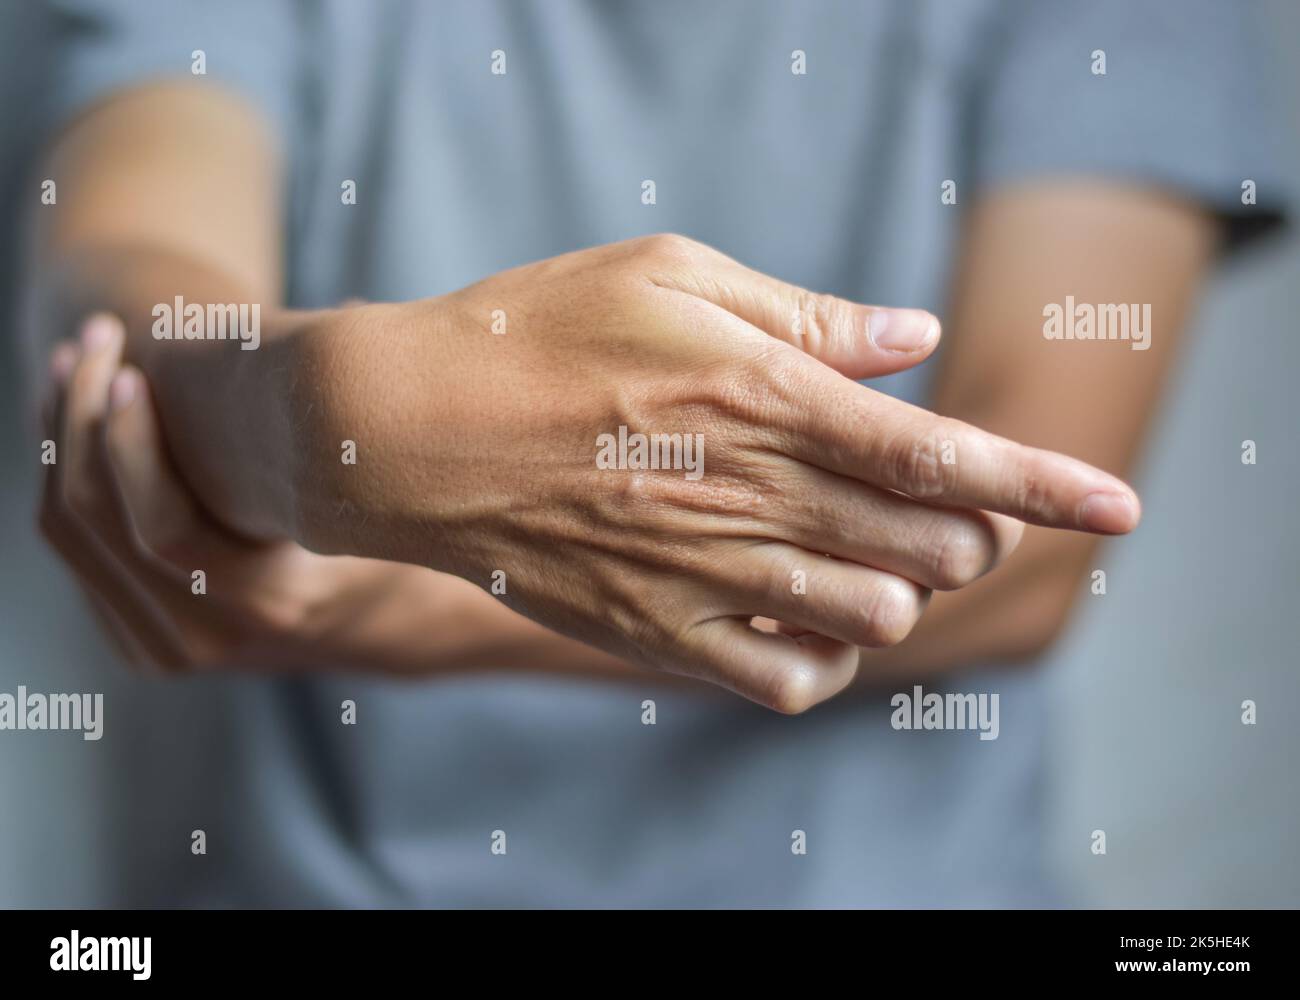 Rigidità delle dita, spasmo dei muscoli delle mani o debolezza delle cifre. Primo piano. Foto Stock